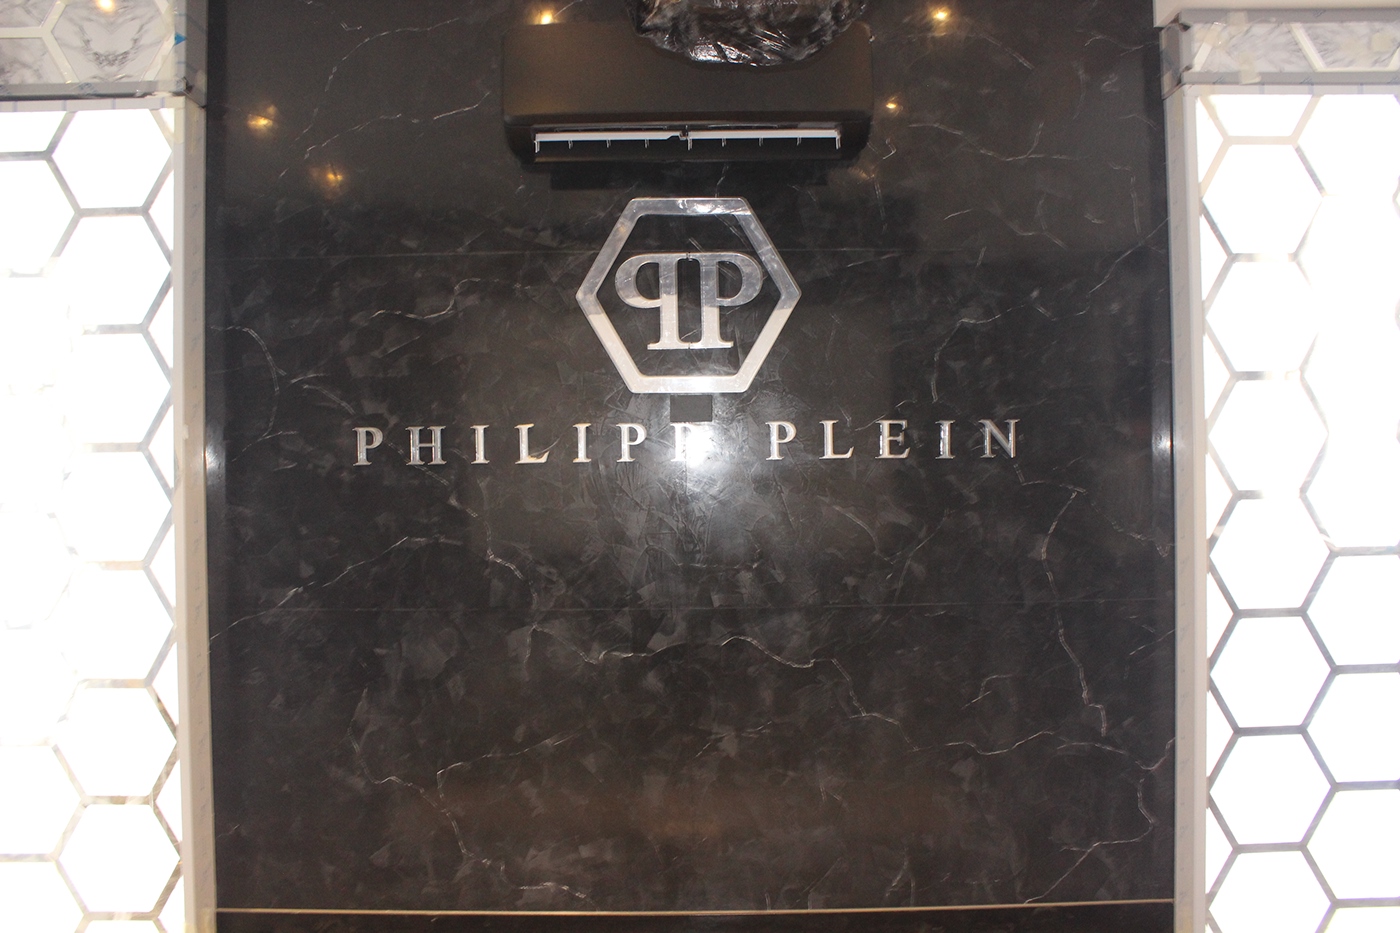 PhilippPlein brand restaurant